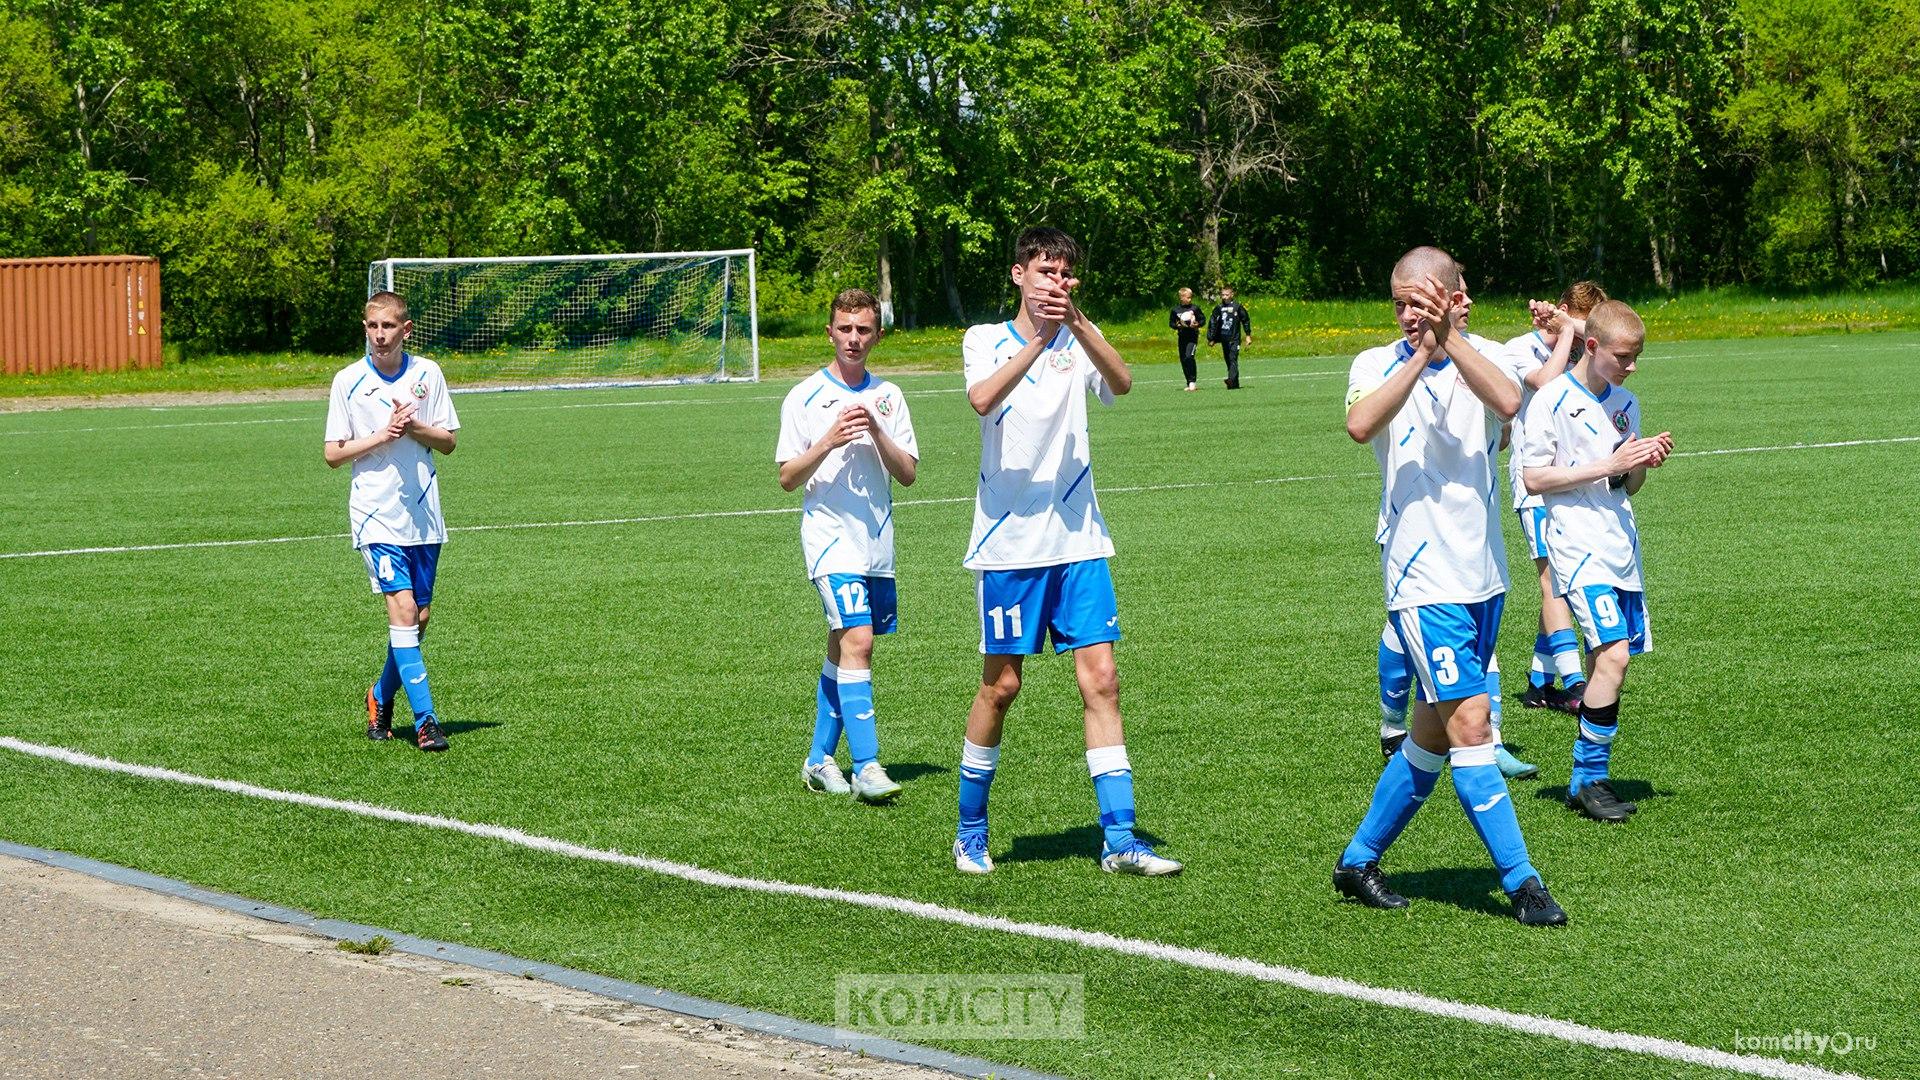 Комсомольск исключили из Дальневосточной юношеской футбольной лиги, но шанс вернуться ещё есть